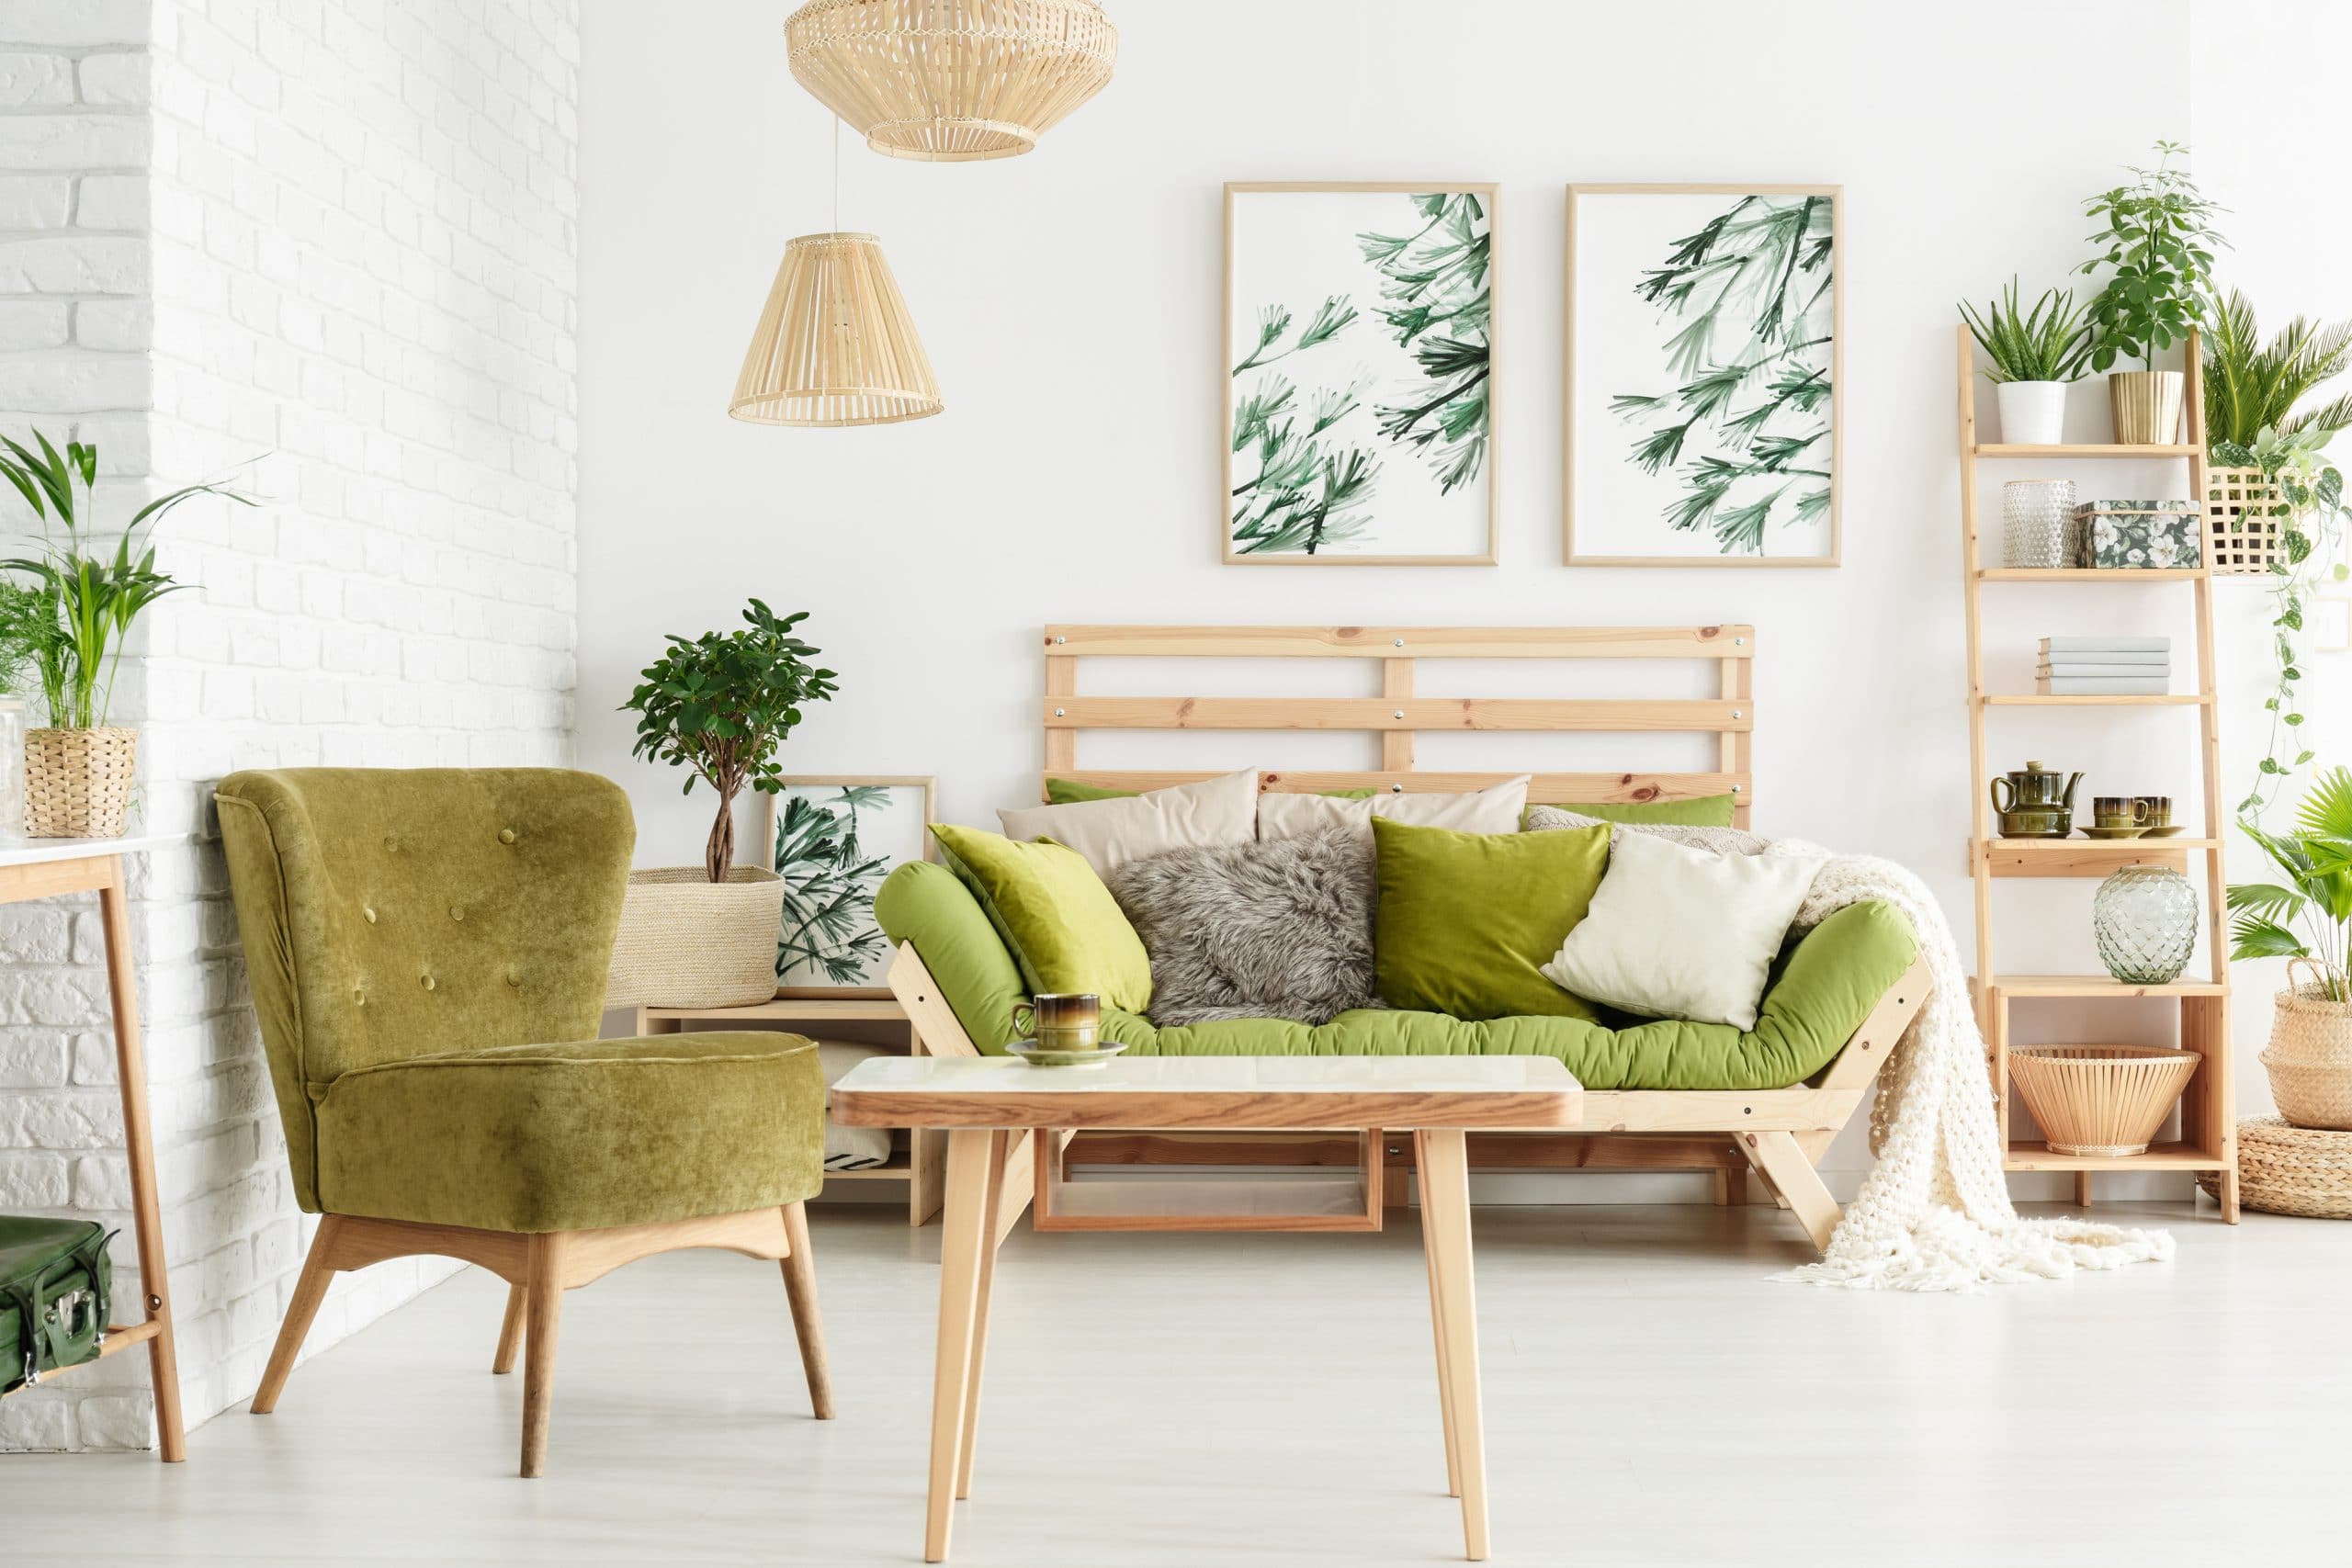 Next to the sofa. Стиль Сканди с зеленым диваном. Эко Сканди стиль. Зеленый диван в Сканди интерьере. Эко Сканди в интерьере.